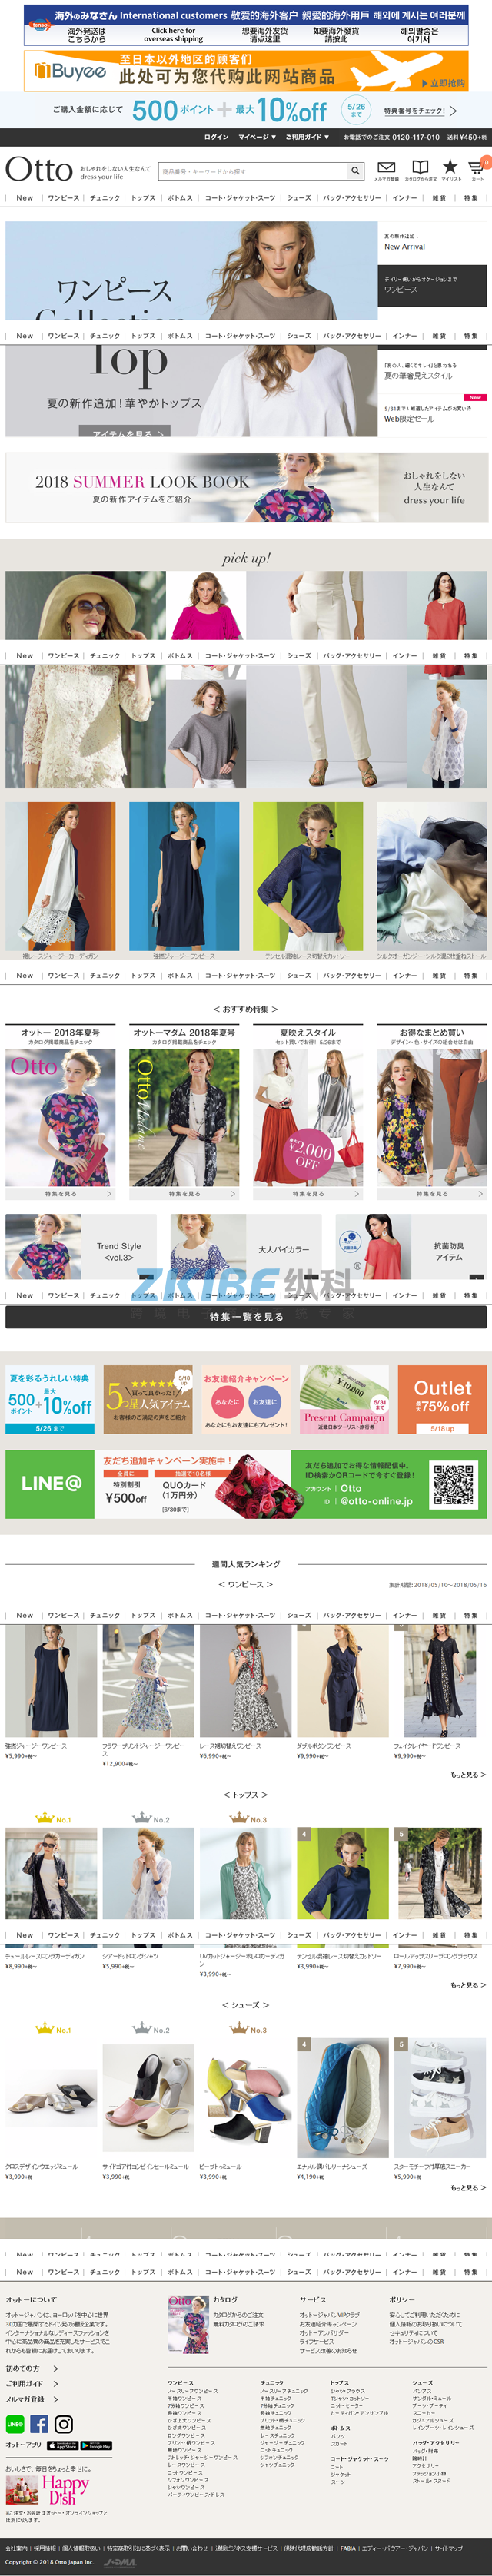 日语购物网站建设-首页